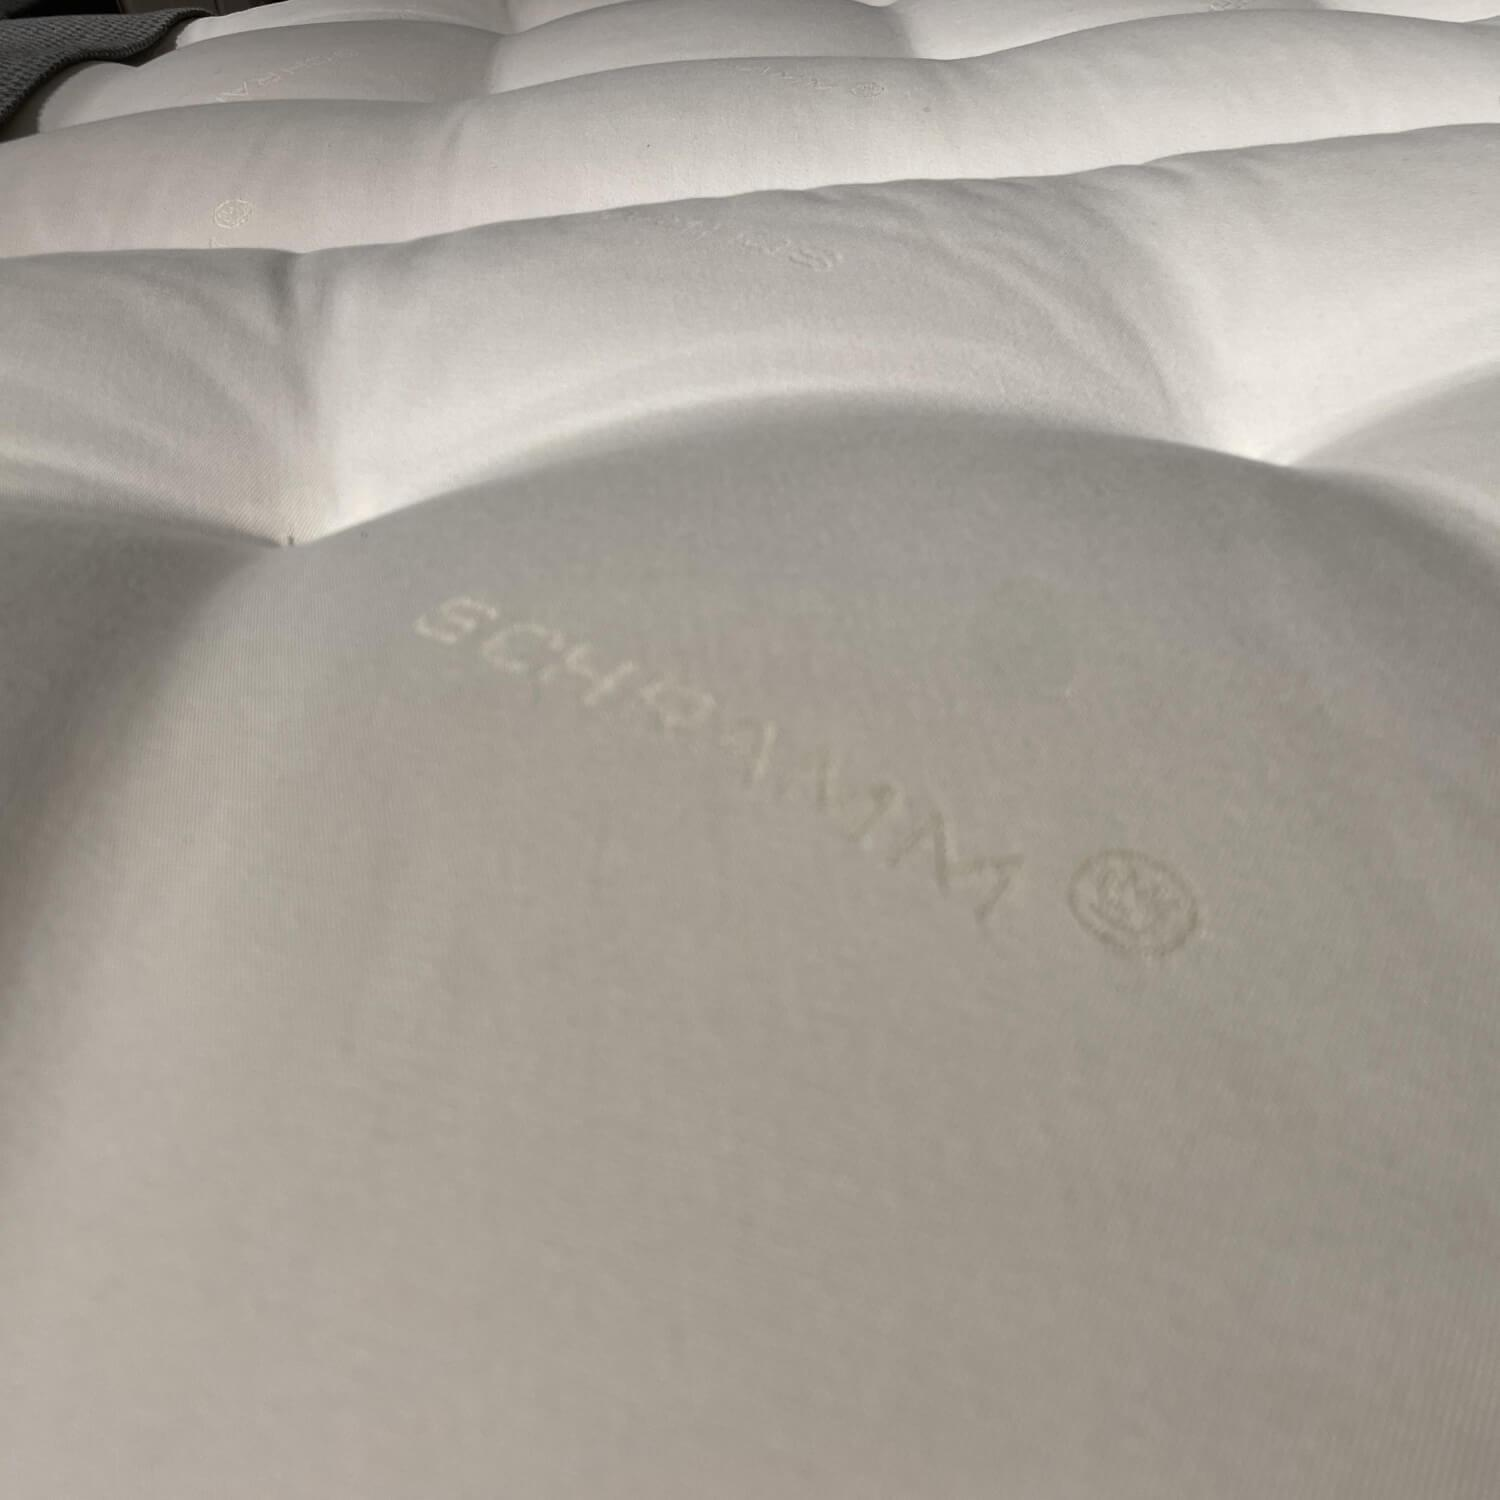 Polsterbett Pure Bed Chill Stoff Grau Meliert Husse In Graphite Inklusive Matratzen